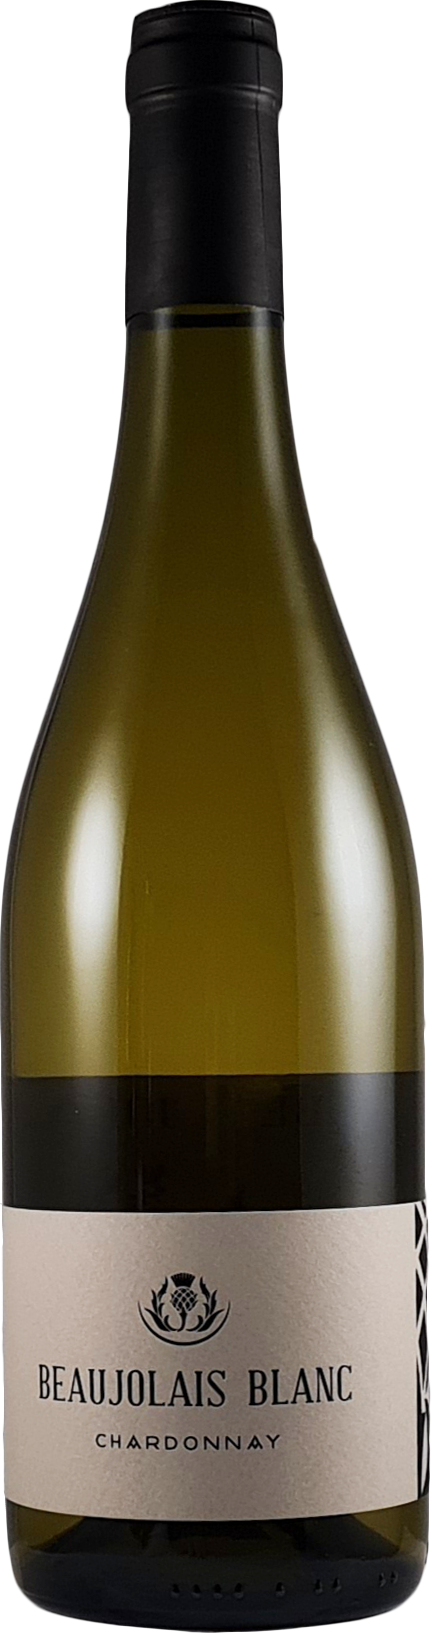 beaujolais blanc 2020 chardonnay